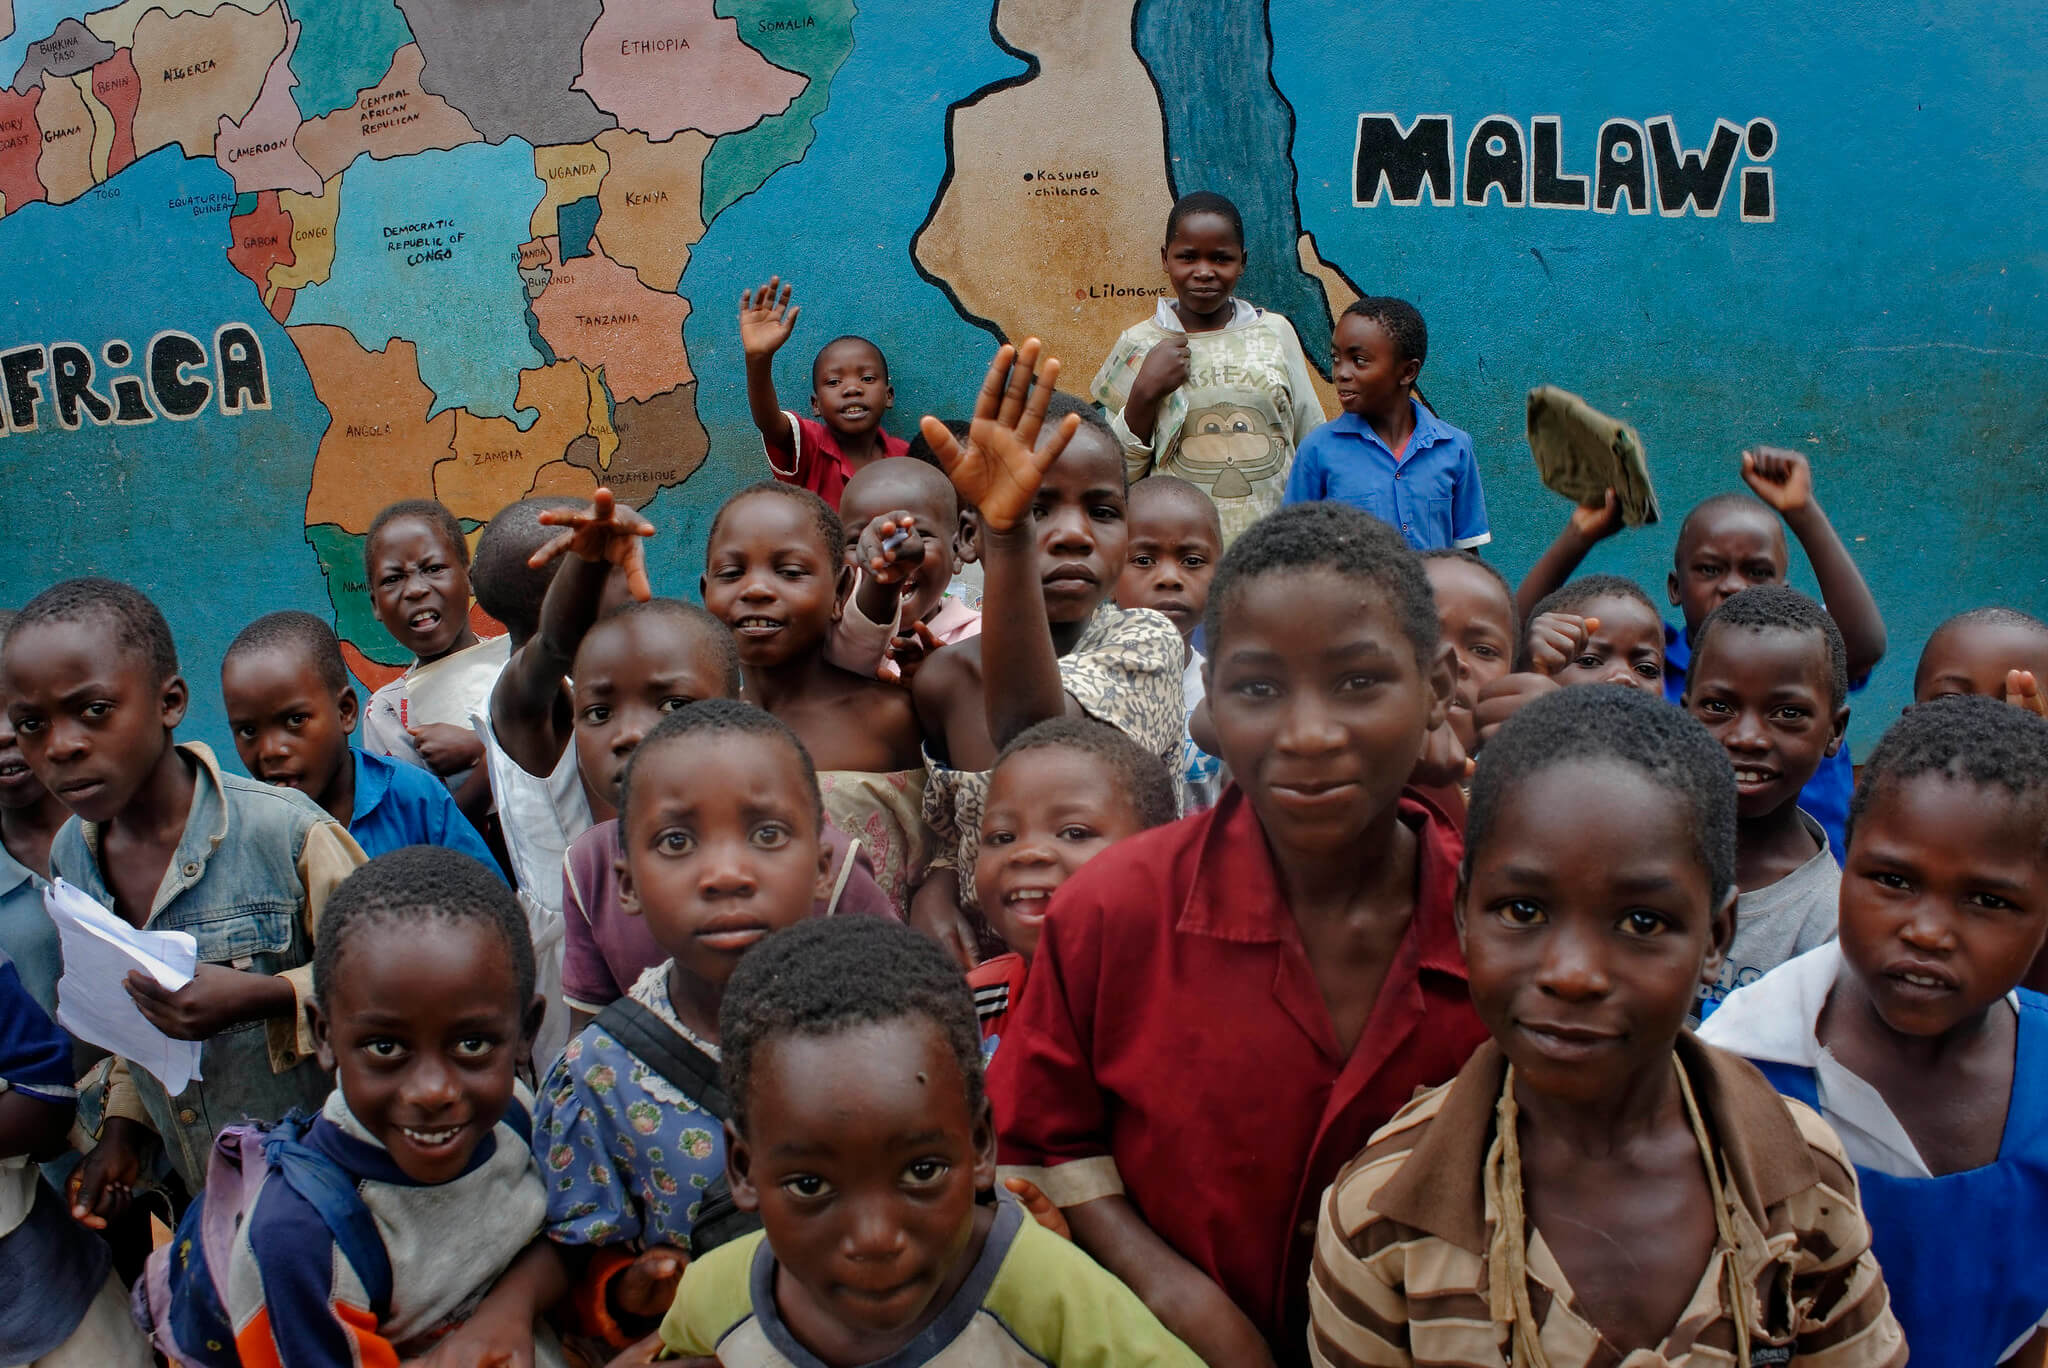 Dietz-Kinderen in Malawi, 2013. International Labour Organization ILO - Marcel Crozet - Flickr 